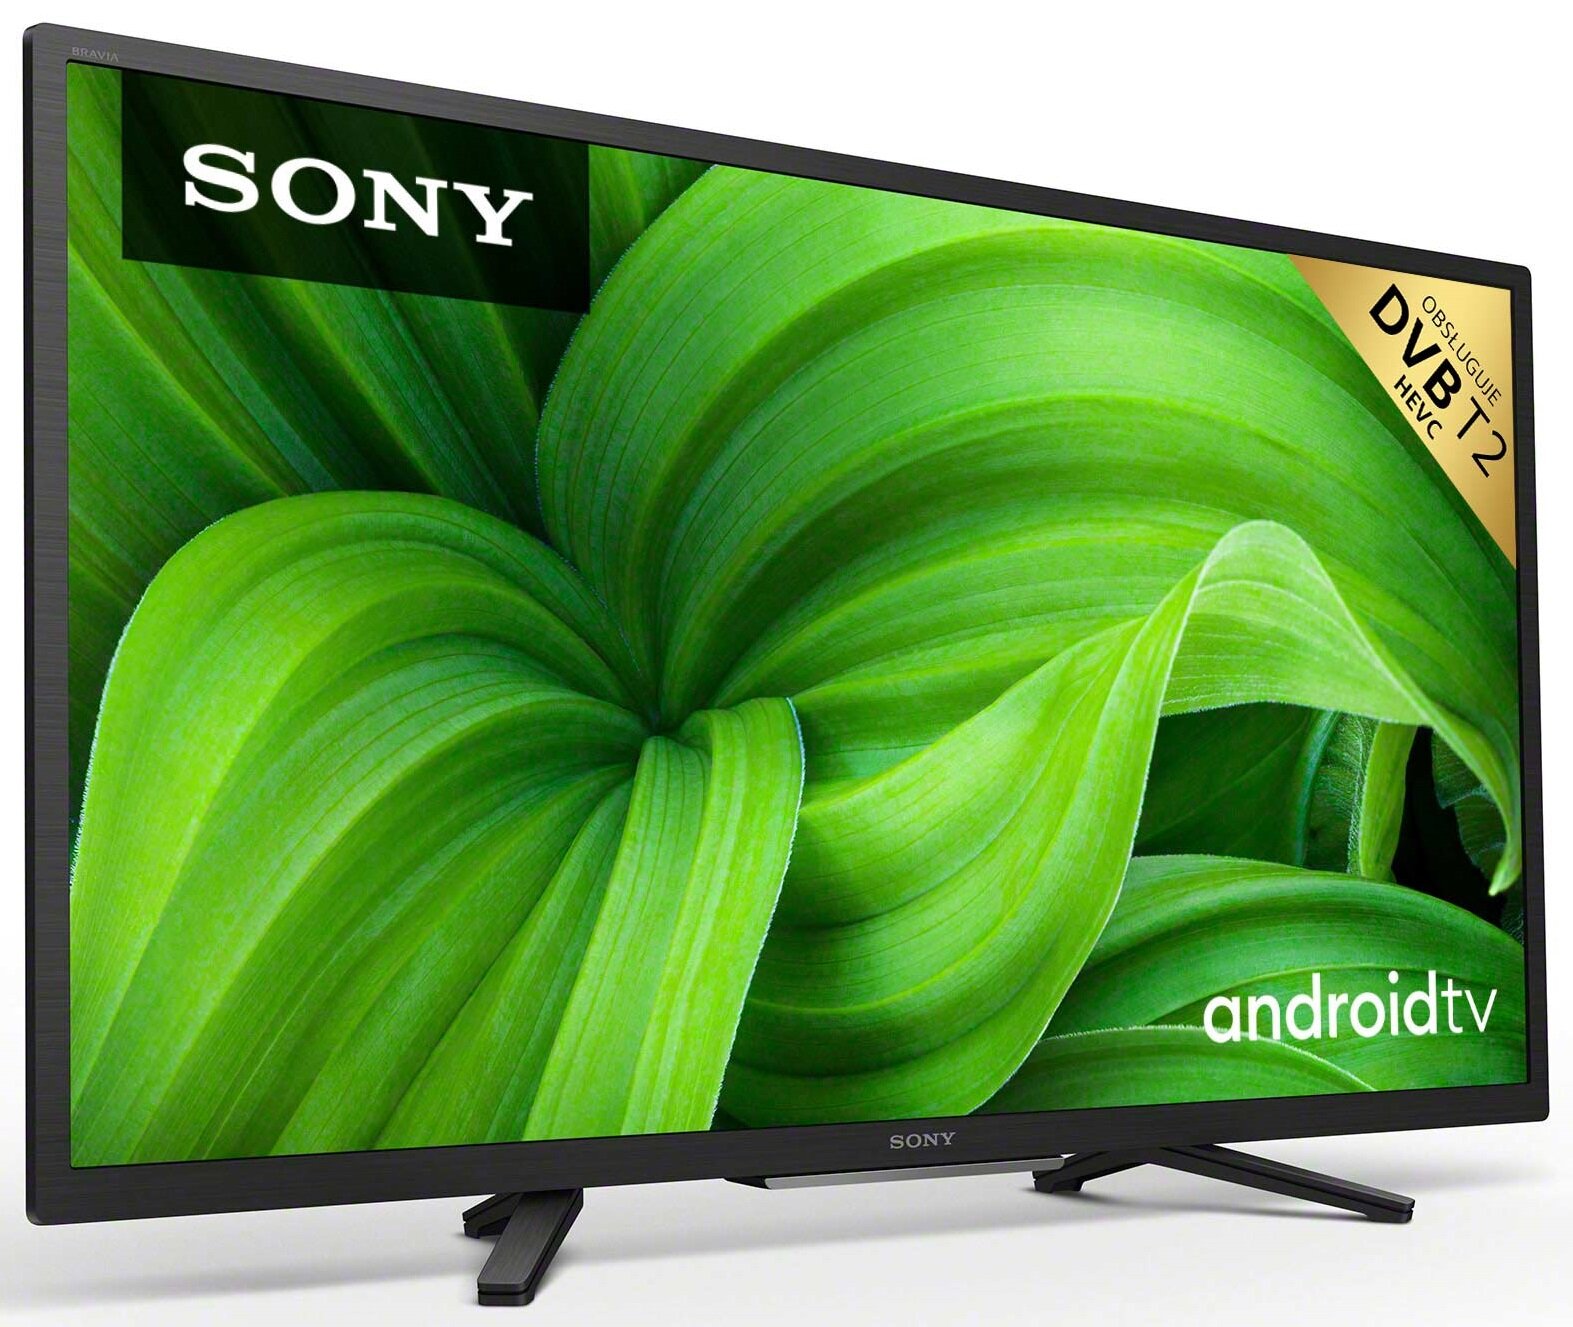 SONY KD-32W800 32" LED Android TV DVB-T2/HEVC/H.265 Telewizor - niskie ceny  i opinie w Media Expert